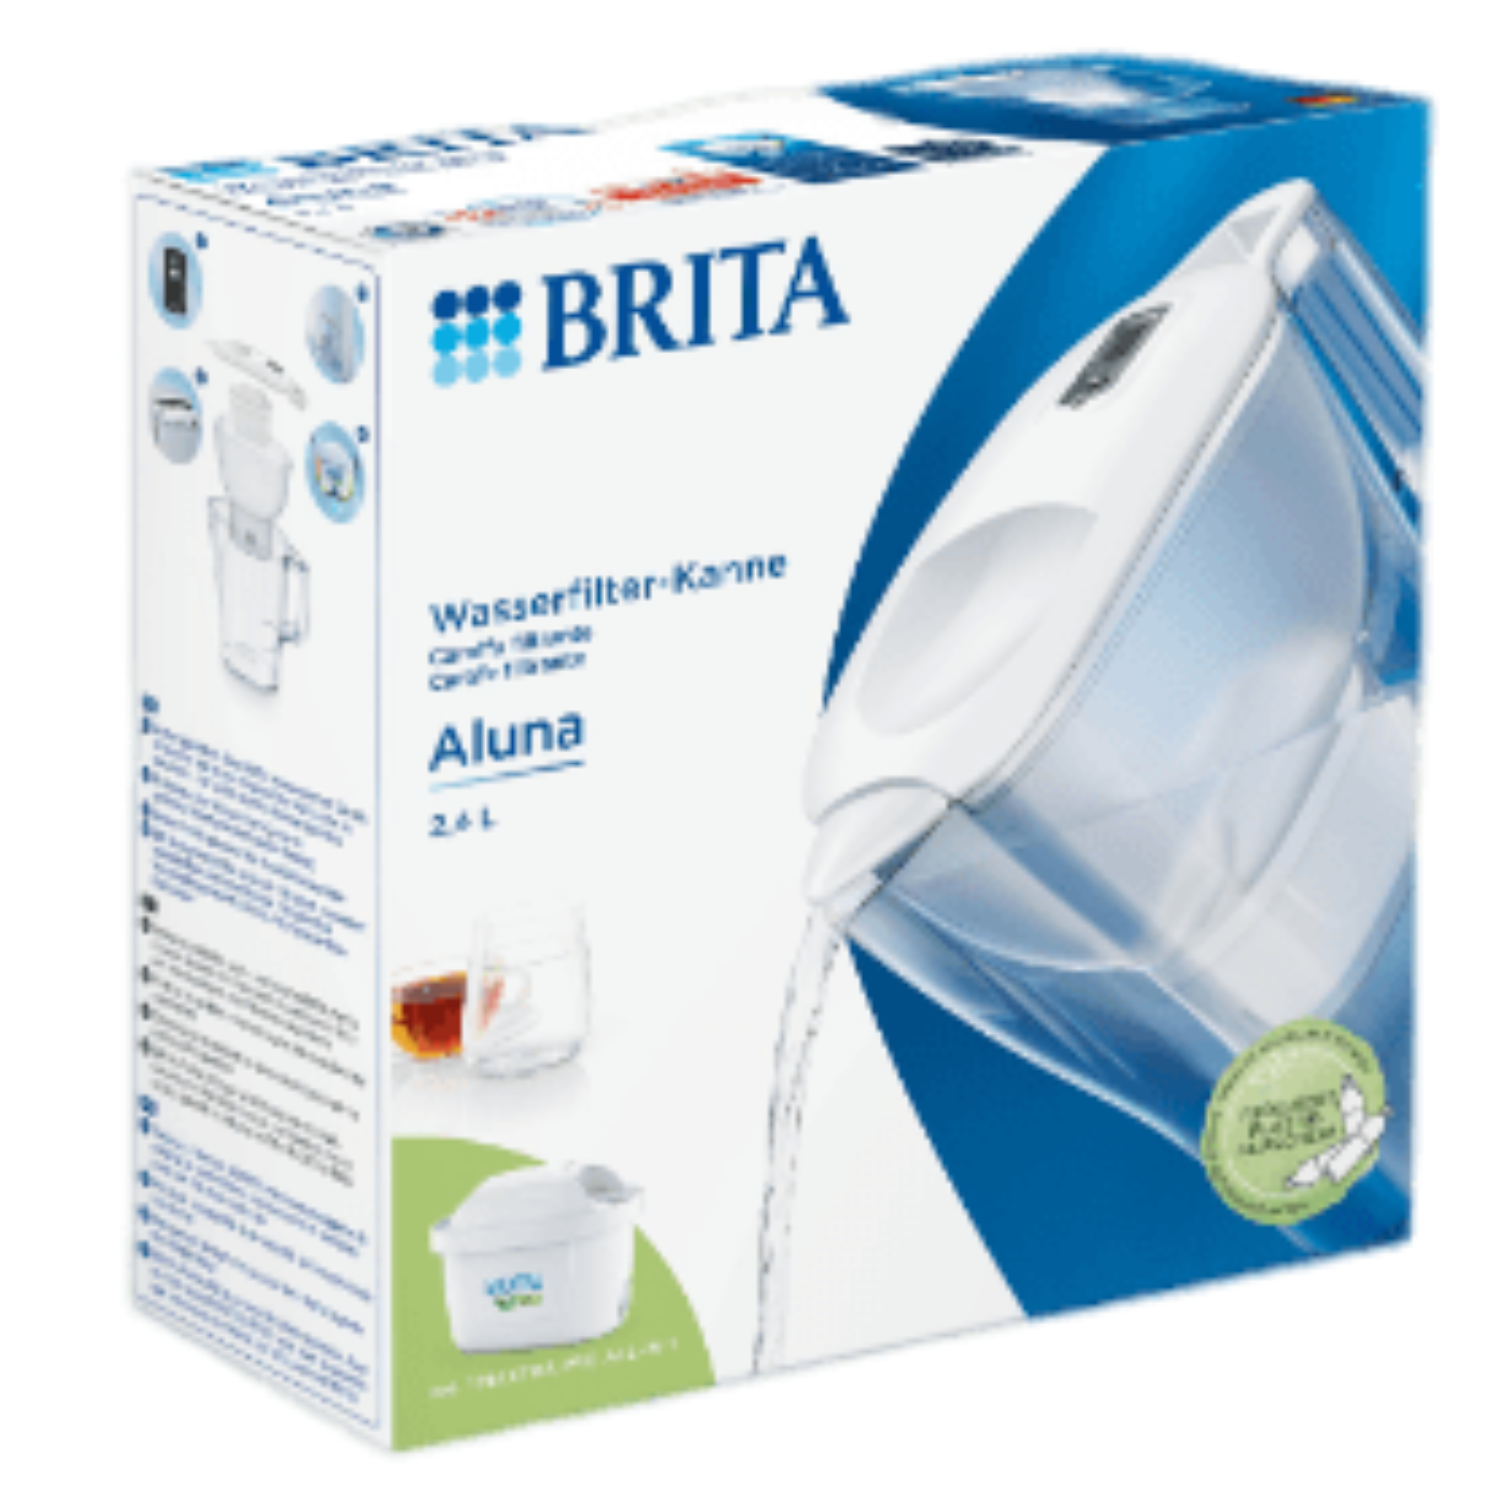 BRITA Waterfilter Aluna